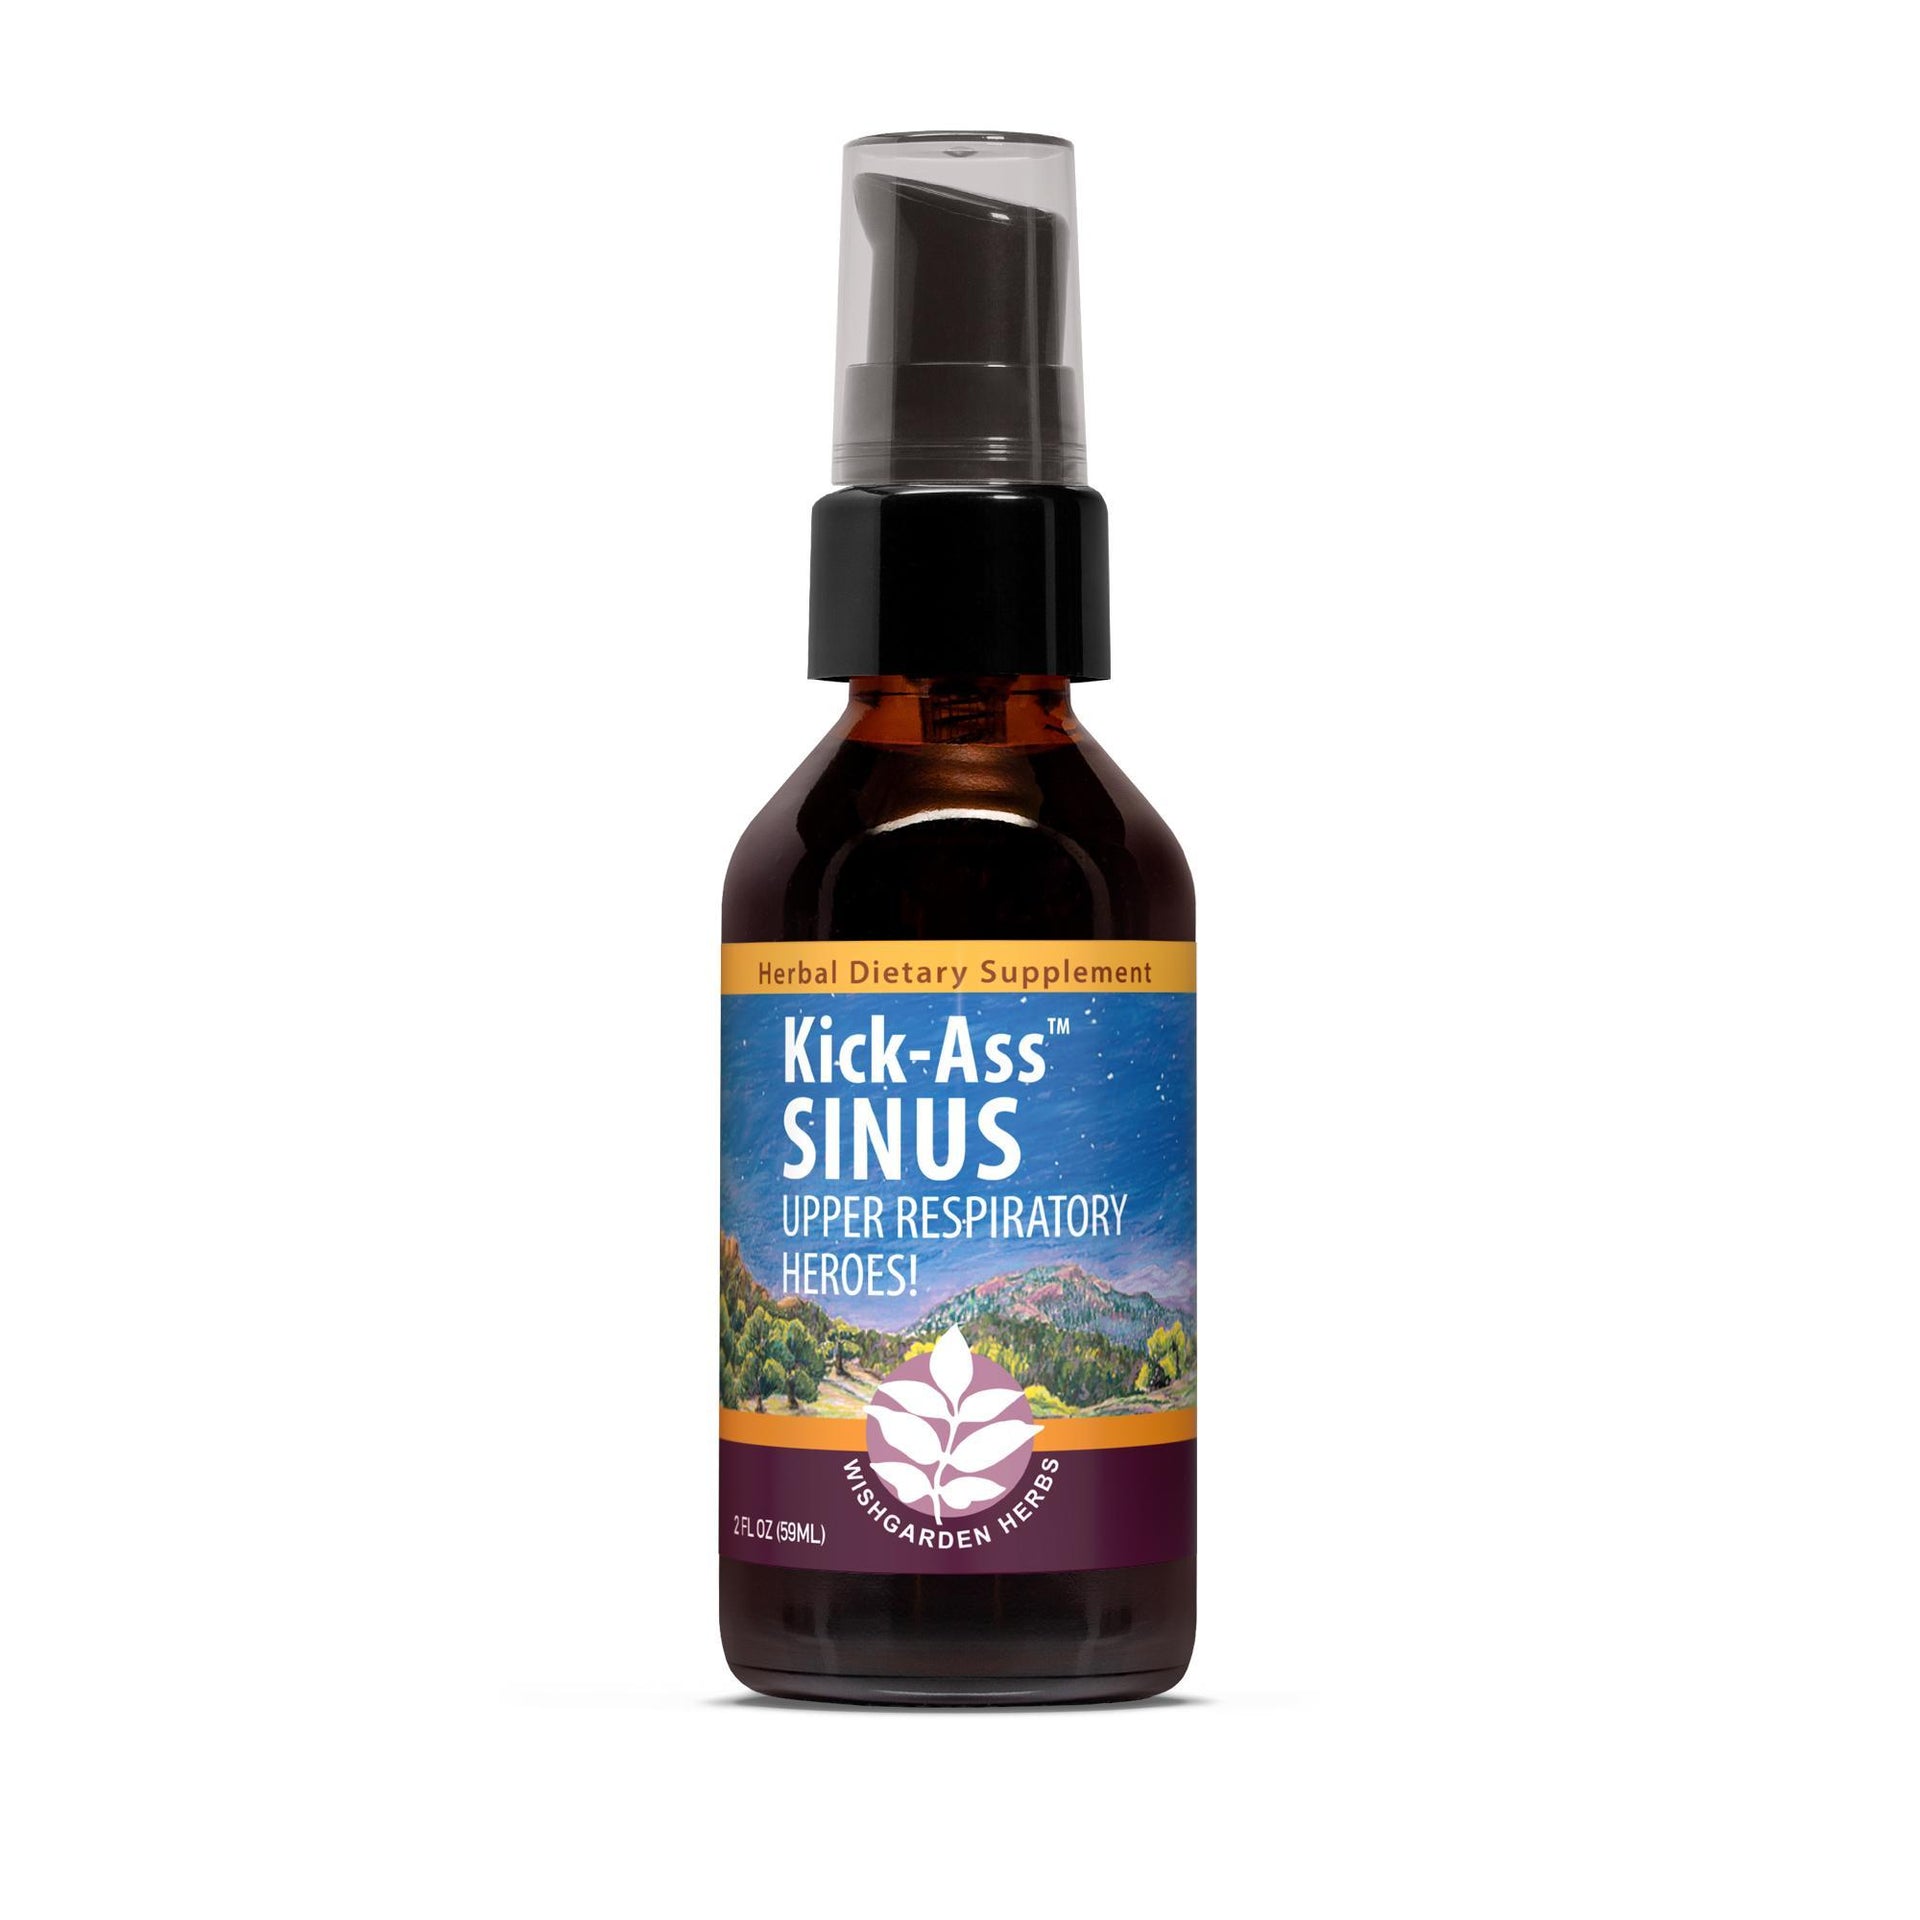 Product Profile: Kick-Ass Sinus